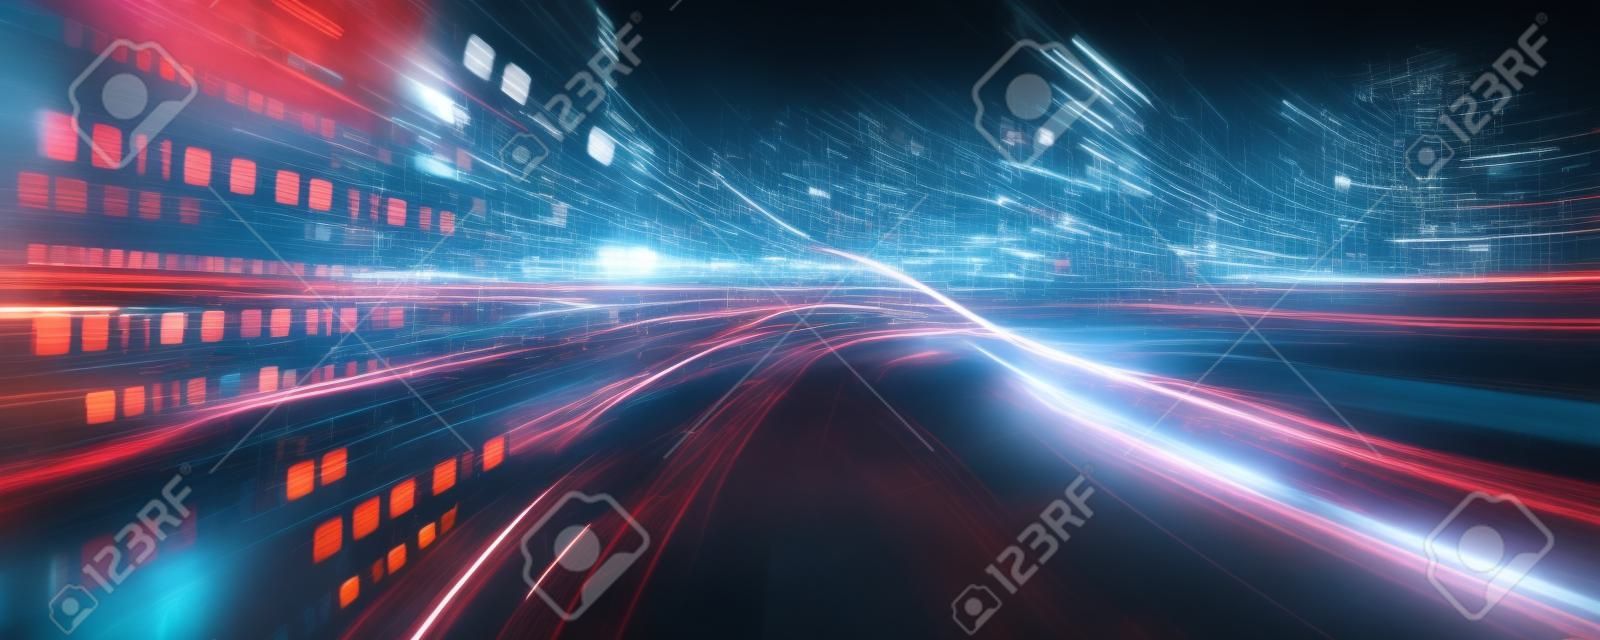 Digitale gegevensstroom op de weg met bewegingsvervaging om visie van snelle snelheid overdracht te creëren. Concept van toekomstige digitale transformatie, ontwrichtende innovatie en wendbare zakelijke methodologie.